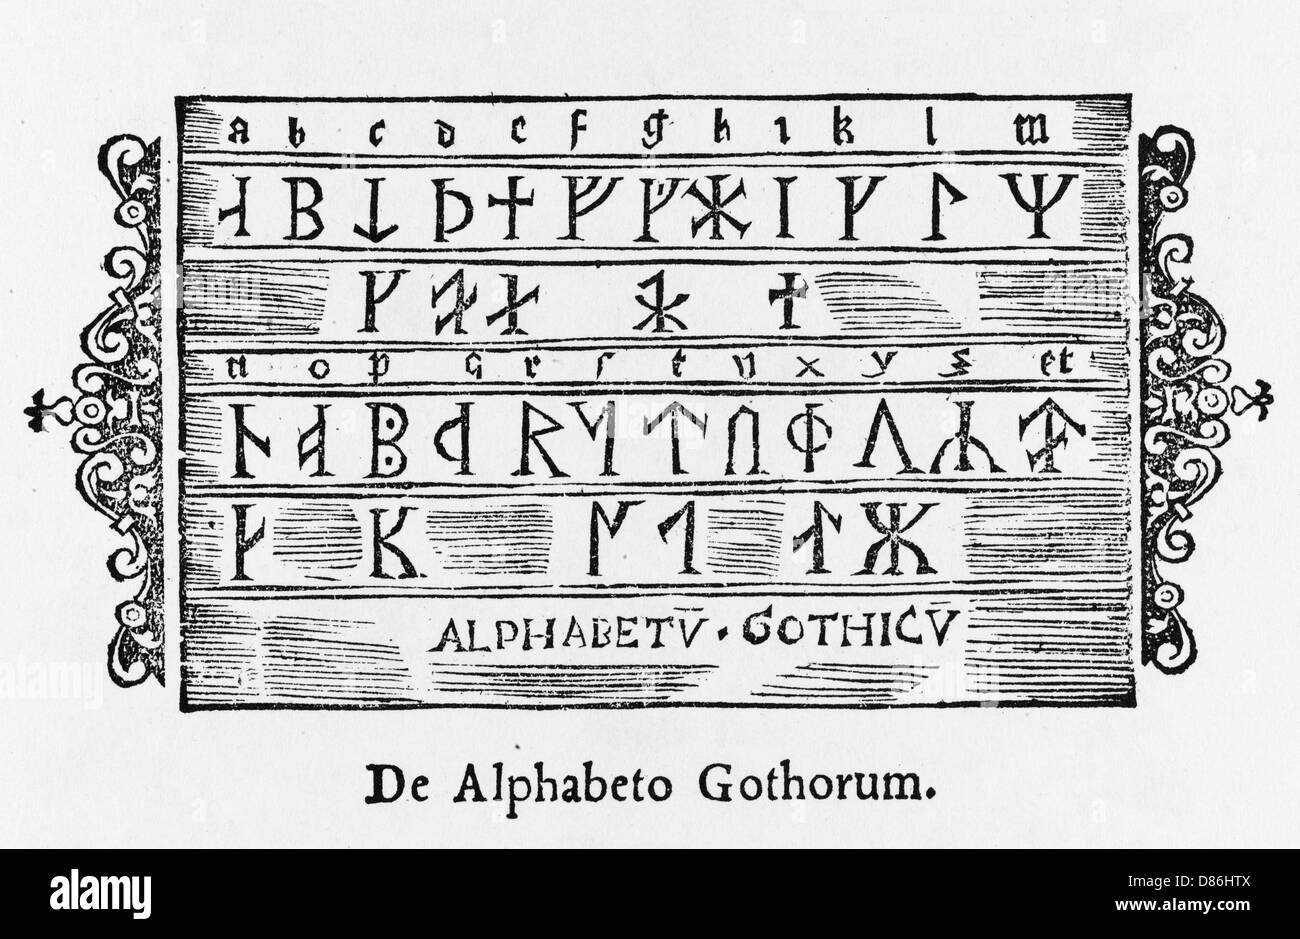 Азбука готов 4. Древнегерманский рунический алфавит. Руническое письмо. Готские письмена. Руническая письменность.